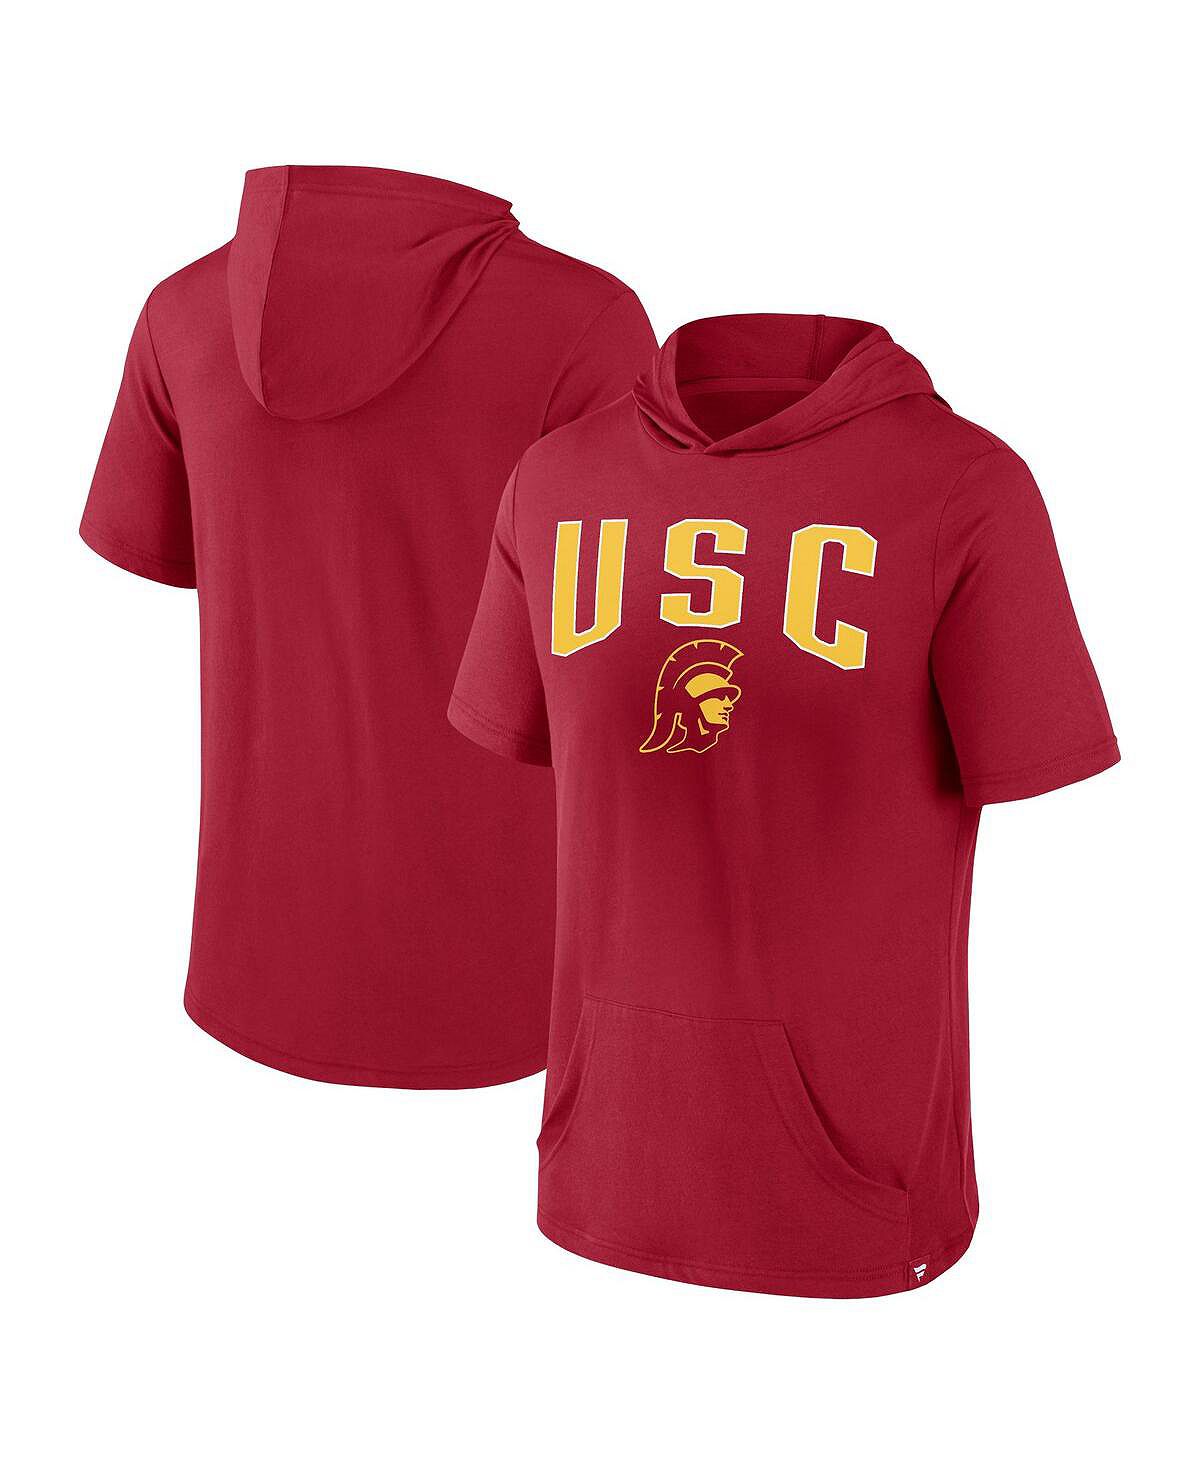 Мужская футболка с капюшоном с фирменным логотипом Cardinal USC Trojans Outline Lower Arch Fanatics